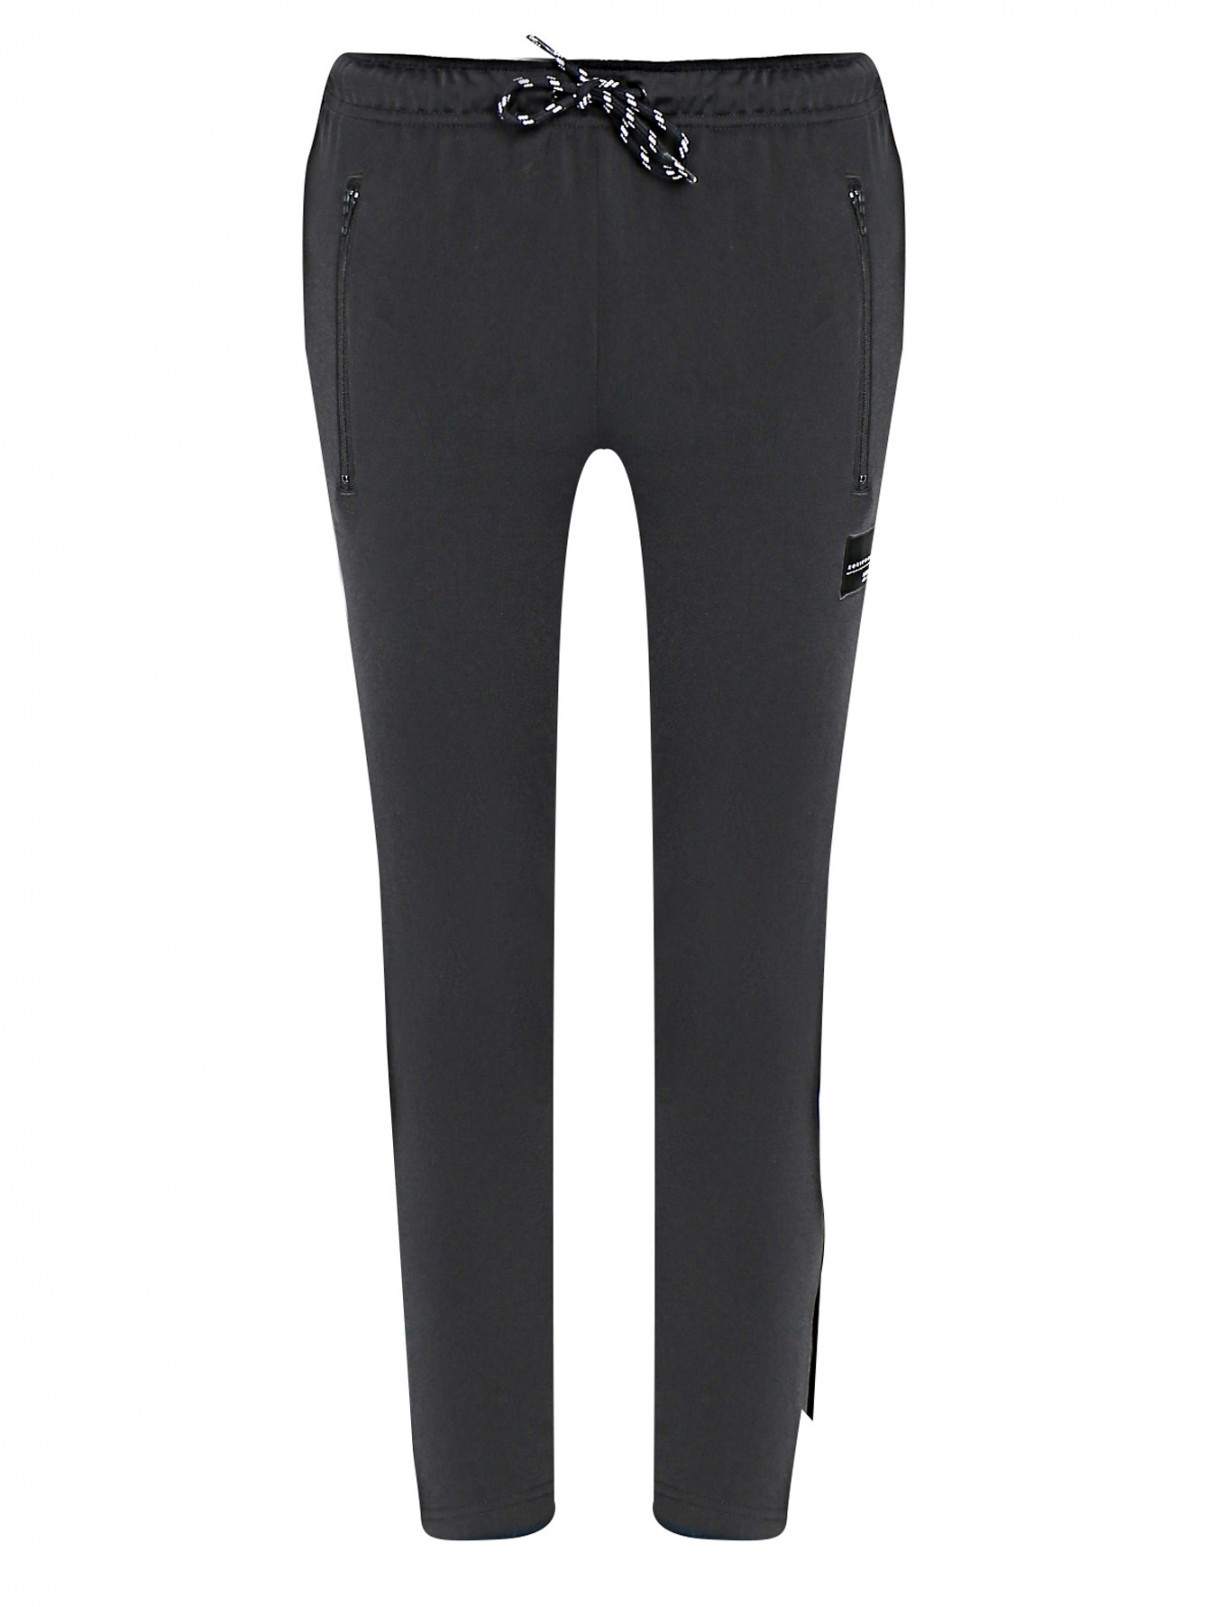 Спортивные брюки на резинке с карманами Adidas Originals  –  Общий вид  – Цвет:  Черный